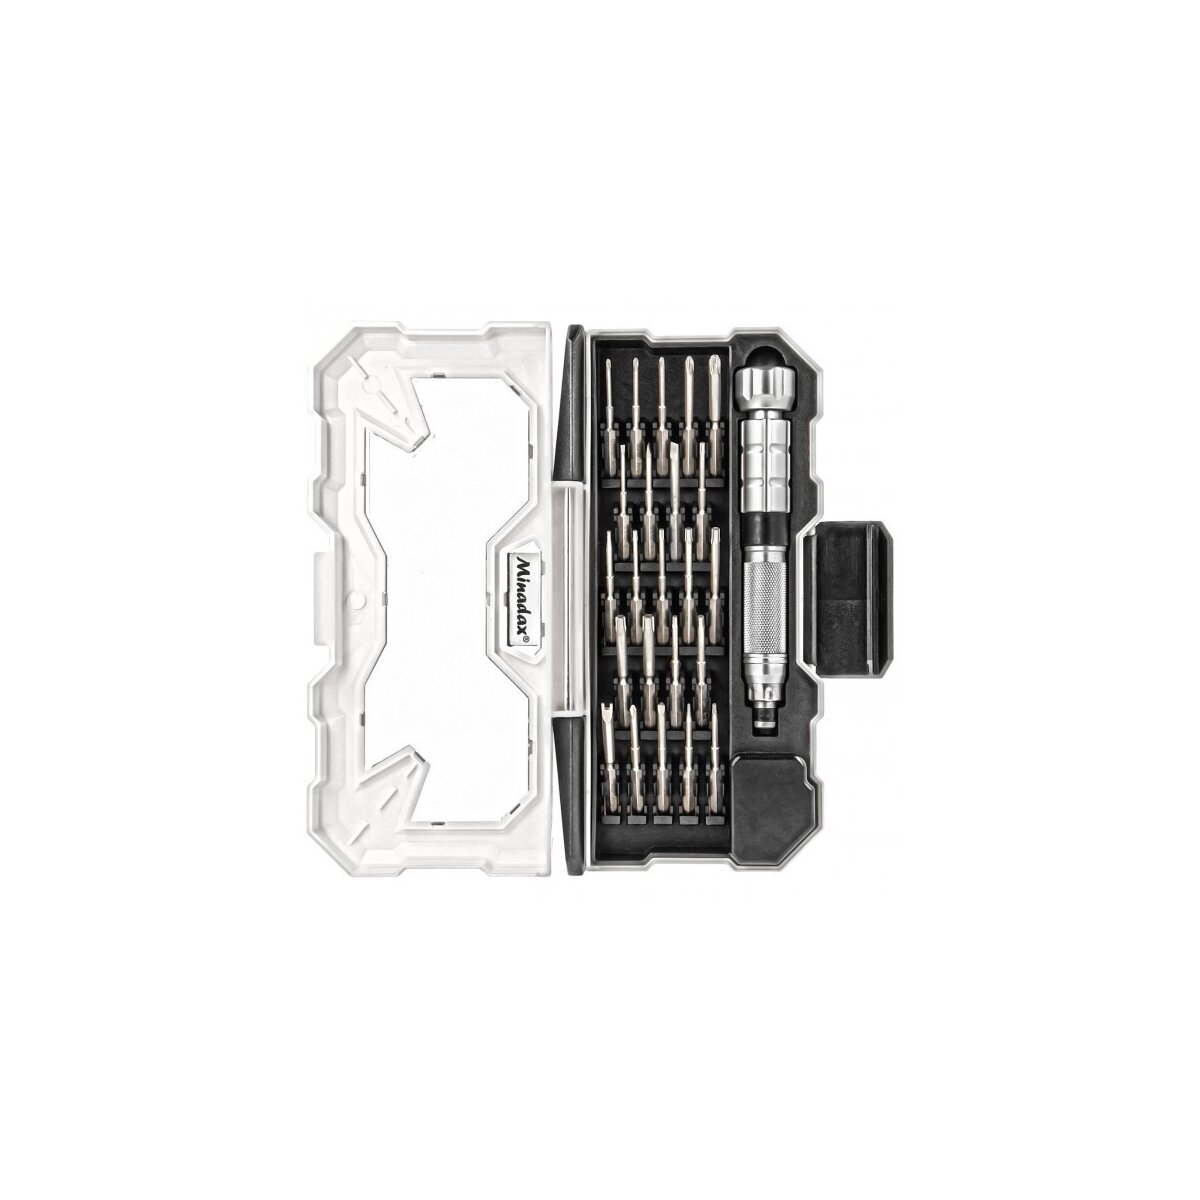 Minadax® Hochwertig Gehärtet S2-Stahl 24-Teile Schraubendreher Feinmechaniker Werkzeug - besonders belastbar inkl. Aufbewahrungsbox - für Notebook PCs Kleingeräte usw.